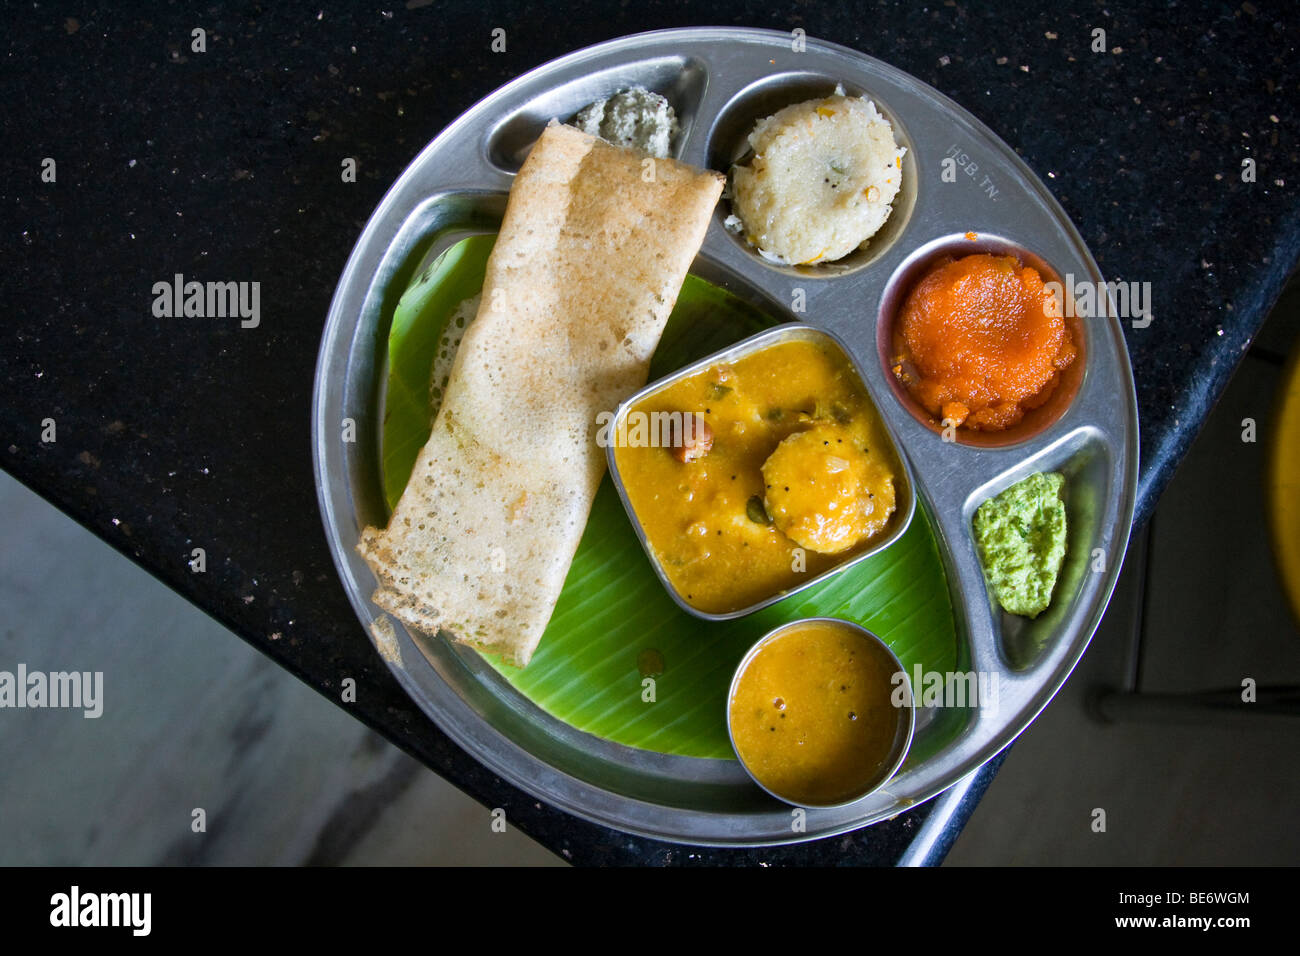 Mini sandwichs, repas typique d'Inde du Sud en Inde Vellore Banque D'Images